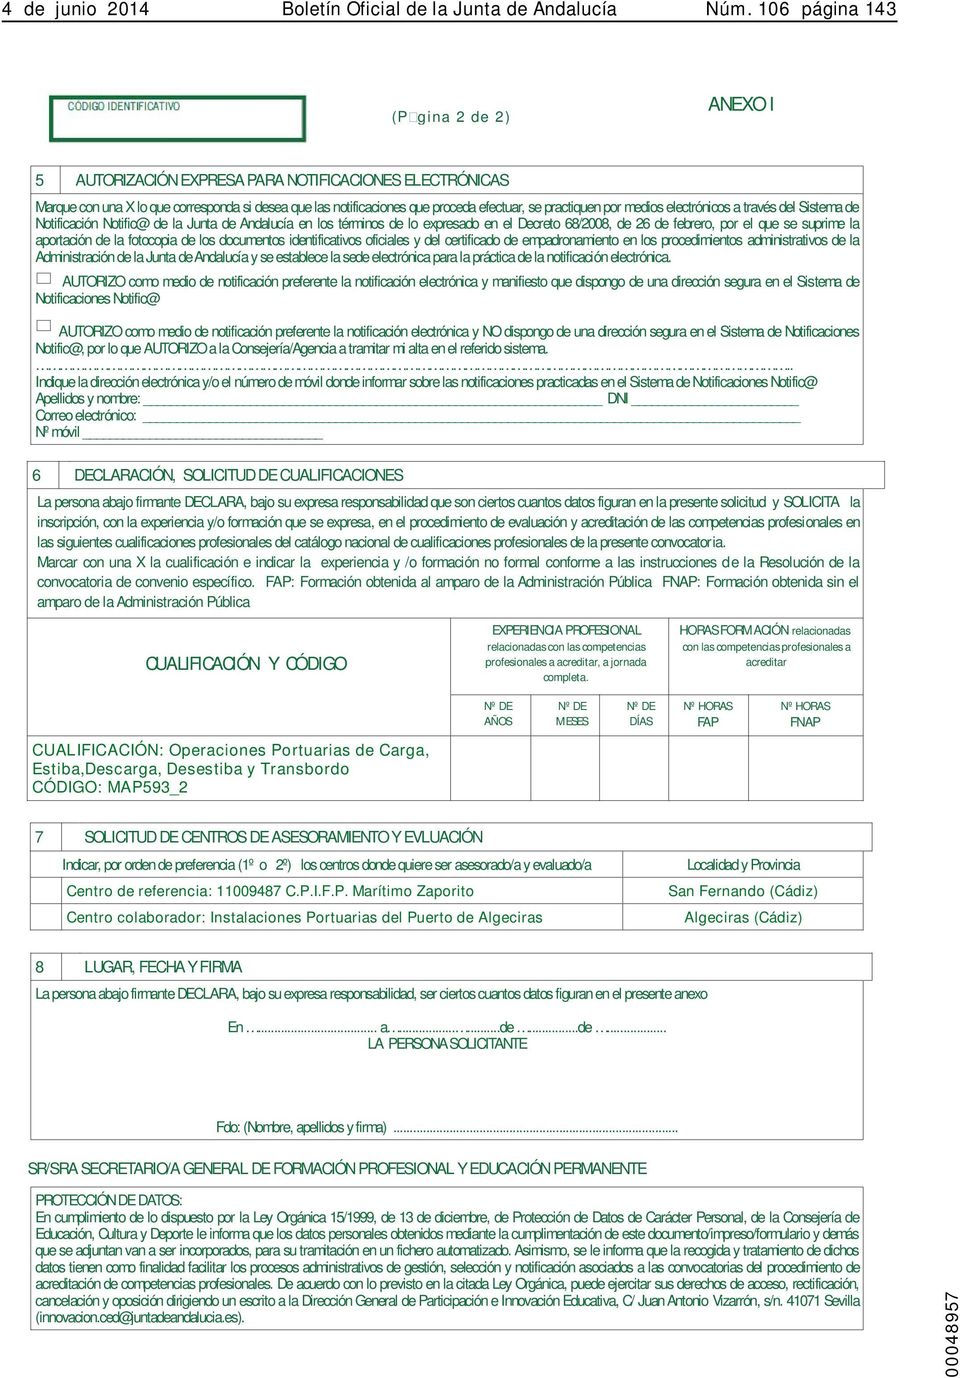 por medios electrónicos a través del Sistema de Notificación Notific@ de la Junta de Andalucía en los términos de lo expresado en el Decreto 68/2008, de 26 de febrero, por el que se suprime la